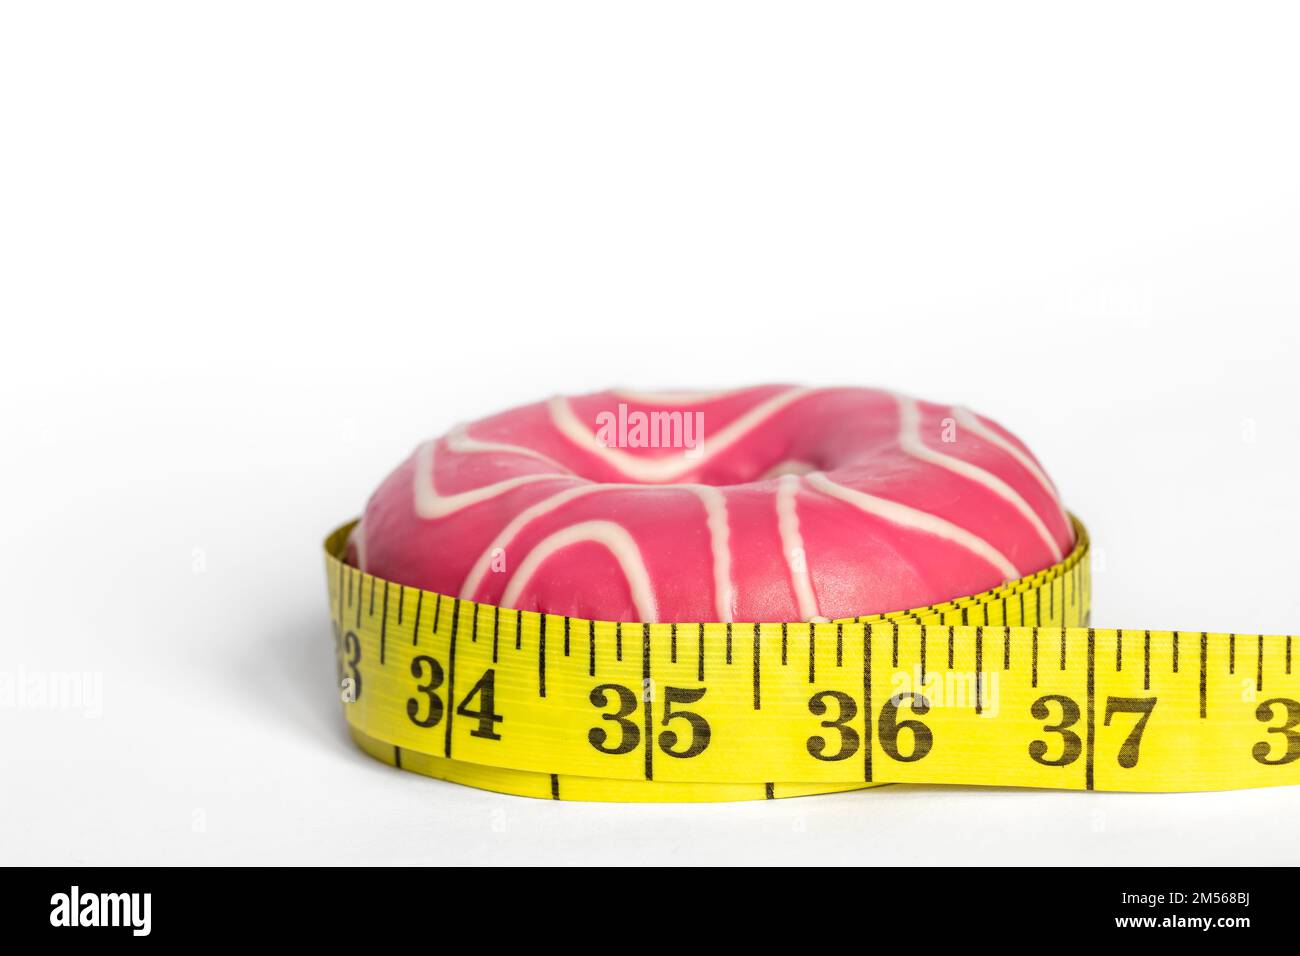 Rosa Donut und Meter, das Konzept der Gewichtszunahme und Gewichtsabnahme. Stockfoto